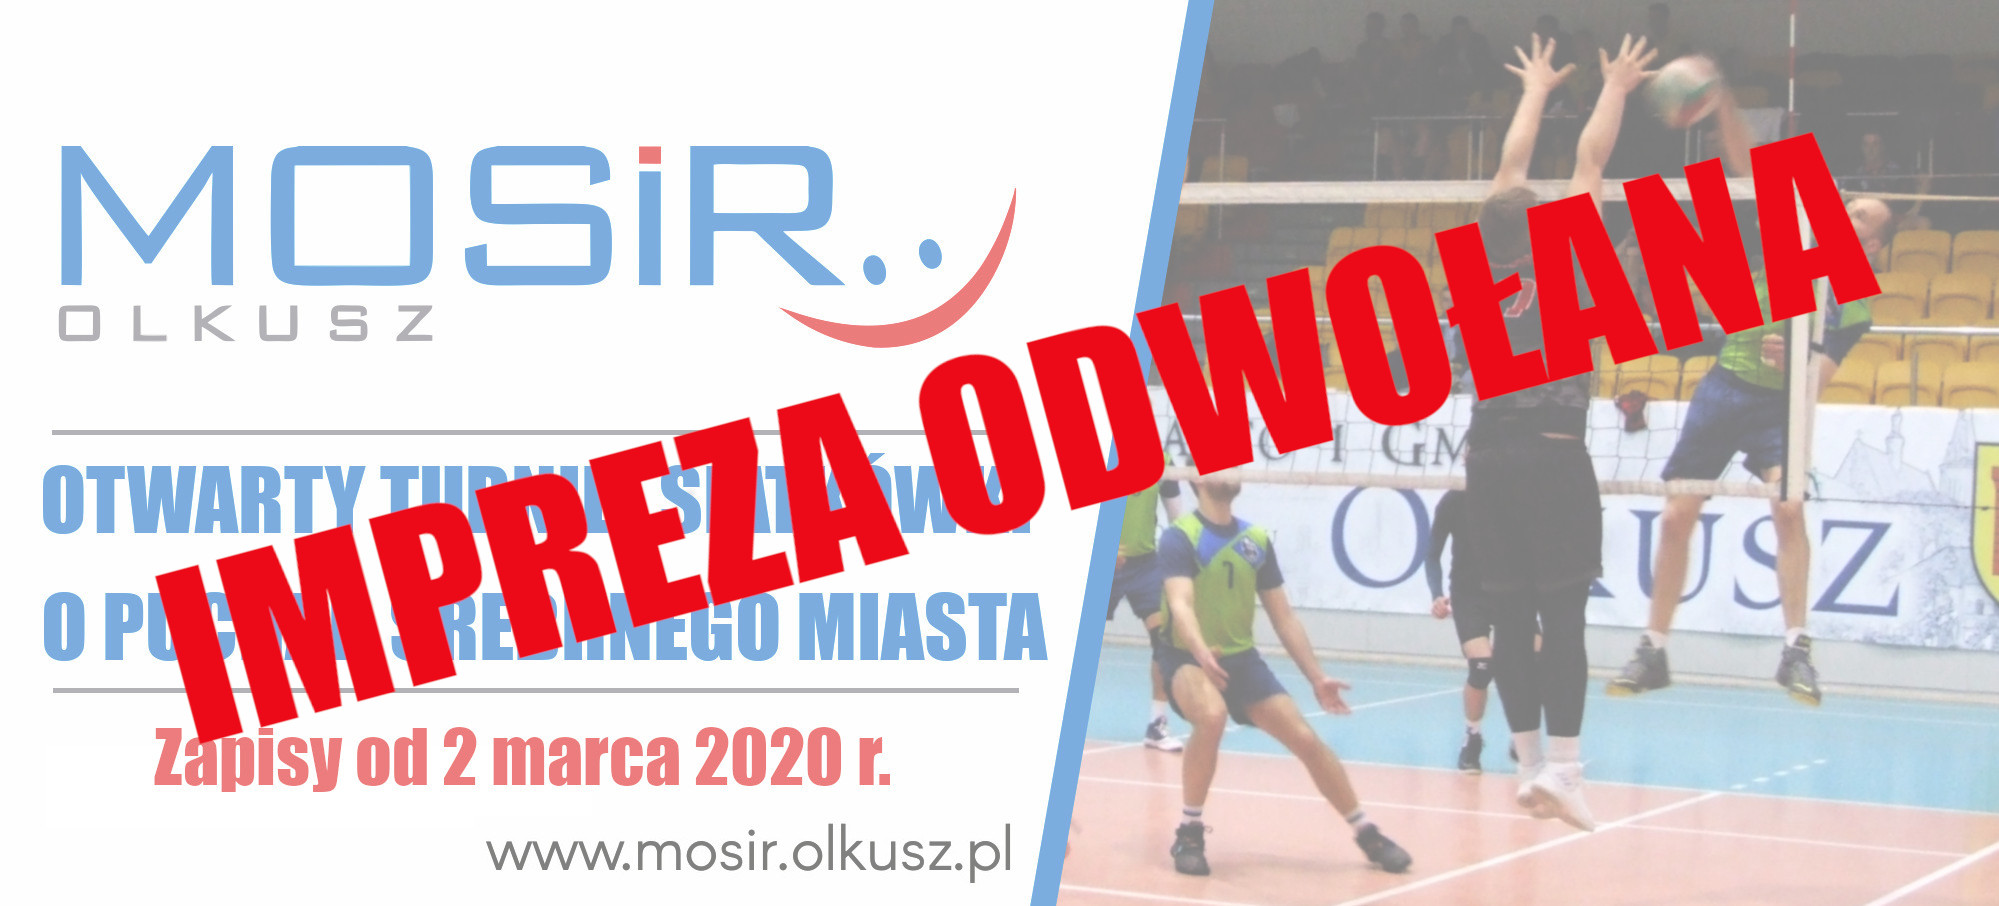 Slajder promujący Otwarty Turniej Siatkówki o Puchar Srebrnego Miasta 2020